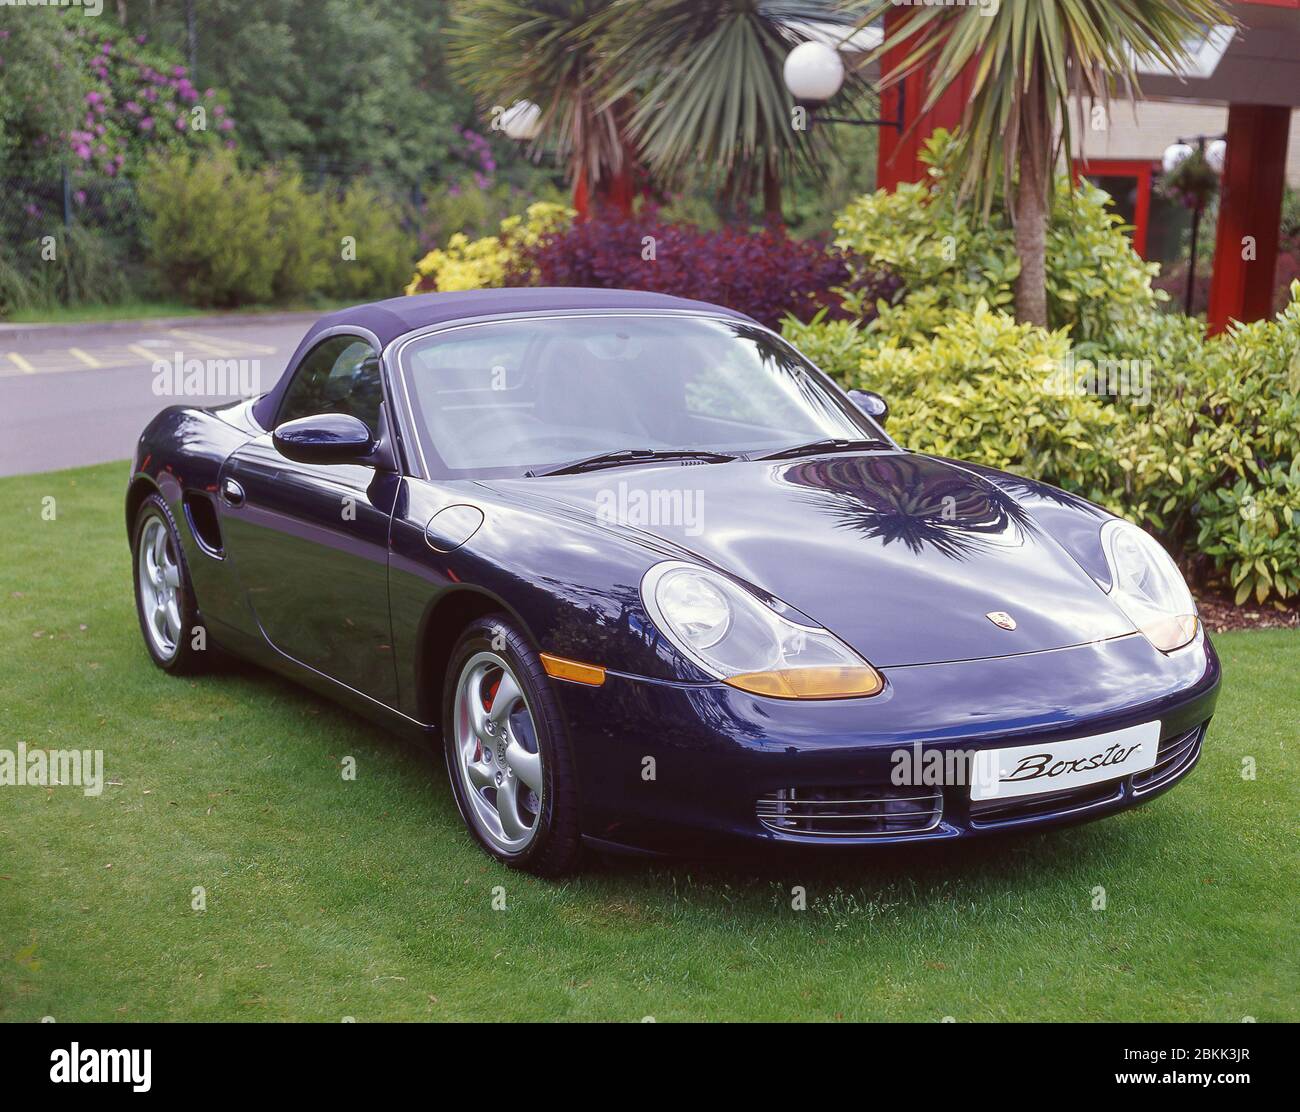 Porsche Boxter (2000) Sportwagen auf Rasen geparkt, Warfield, Berkshire, England, Großbritannien Stockfoto